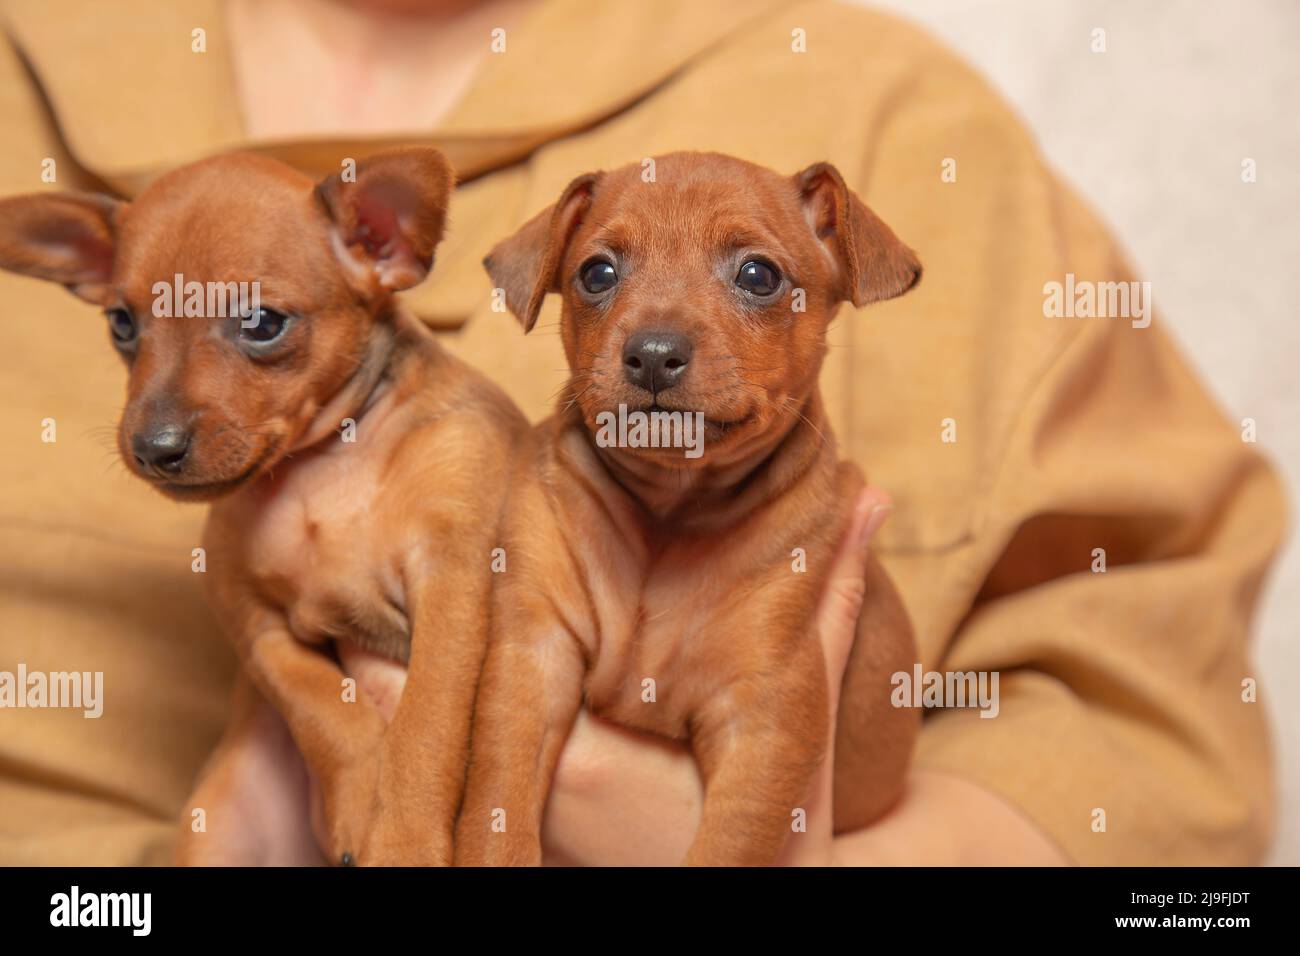 Due adorabili cuccioli sono seduti tra le braccia del proprietario. Amore per gli animali domestici. Interazioni uomo-animale domestico. Foto Stock